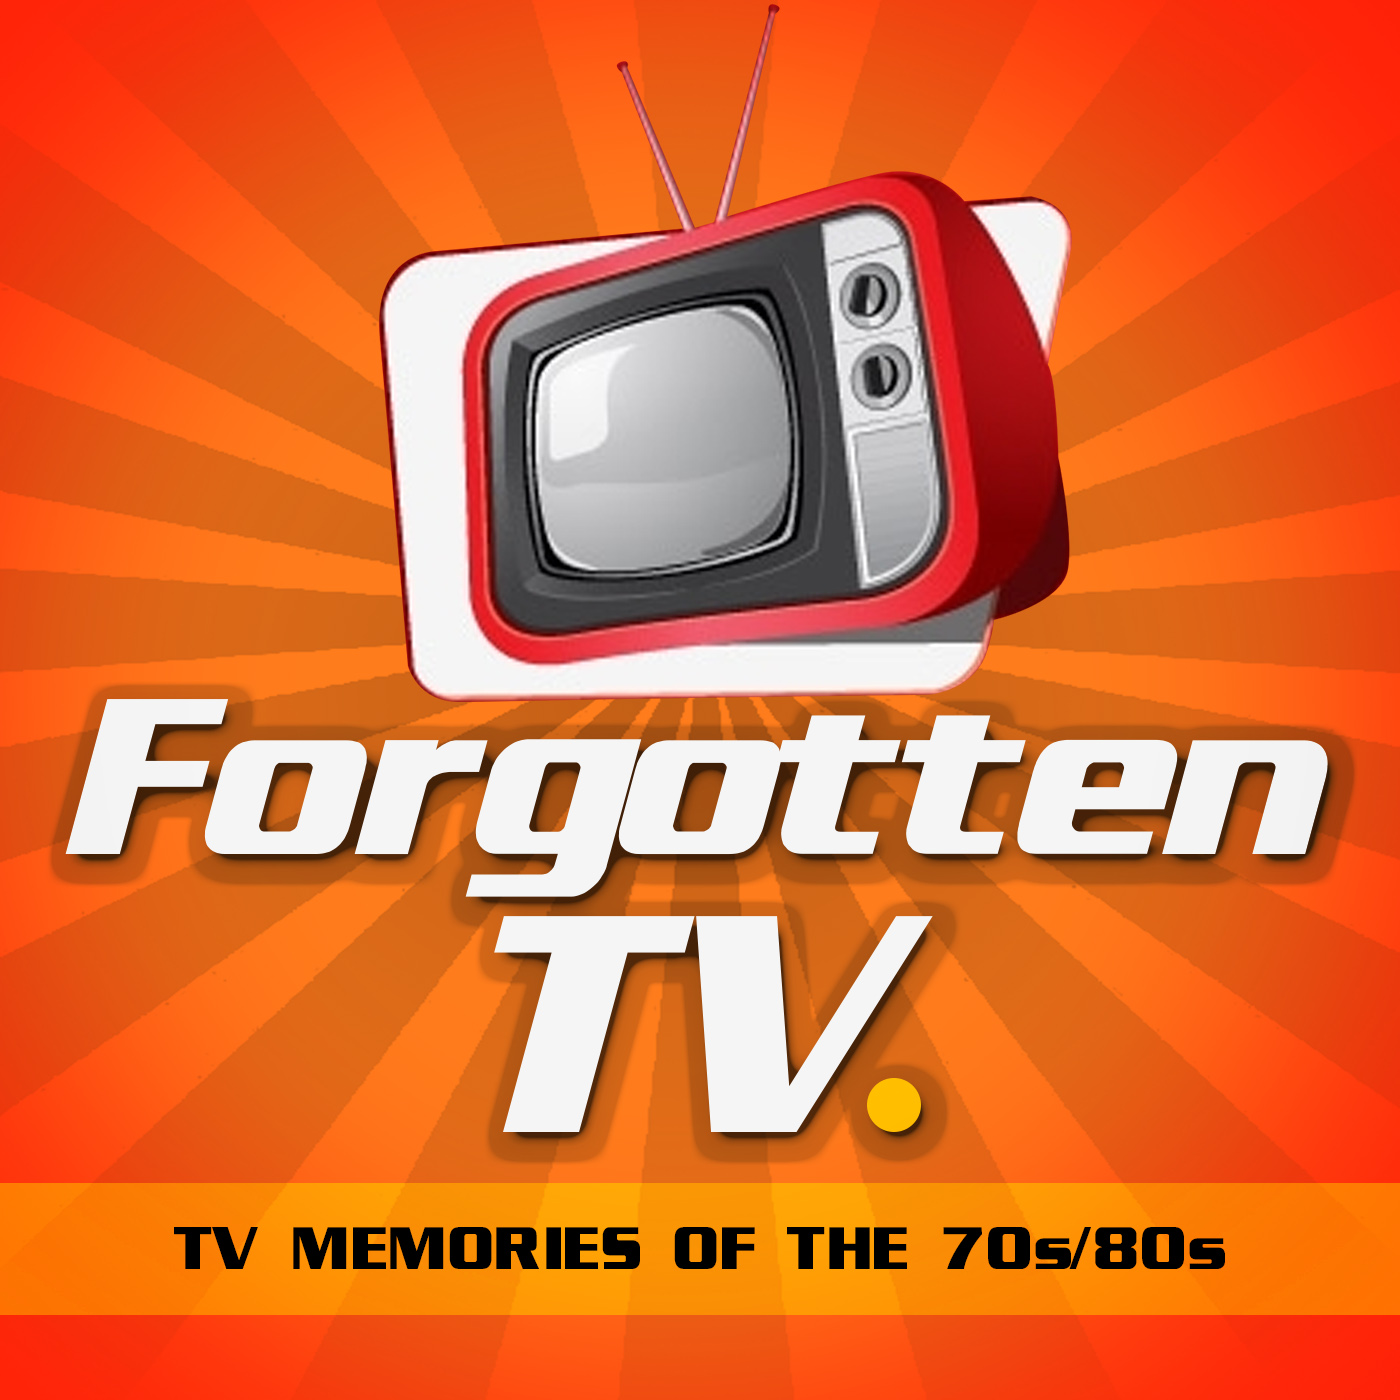 Forgotten TV podcast trailer